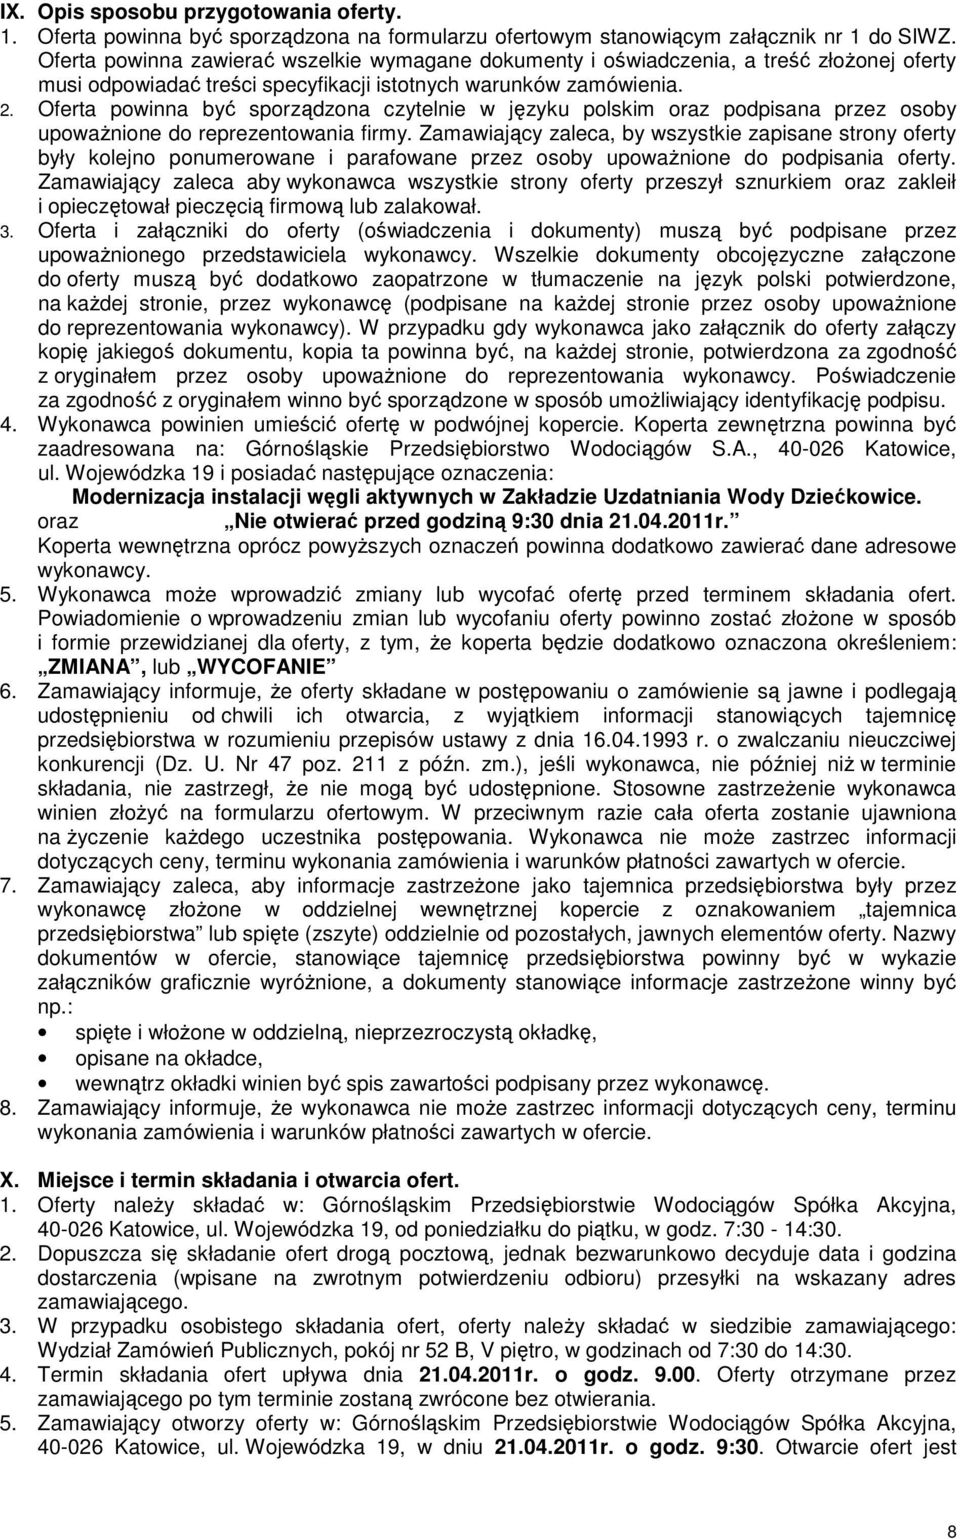 Oferta powinna być sporządzona czytelnie w języku polskim oraz podpisana przez osoby upowaŝnione do reprezentowania firmy.